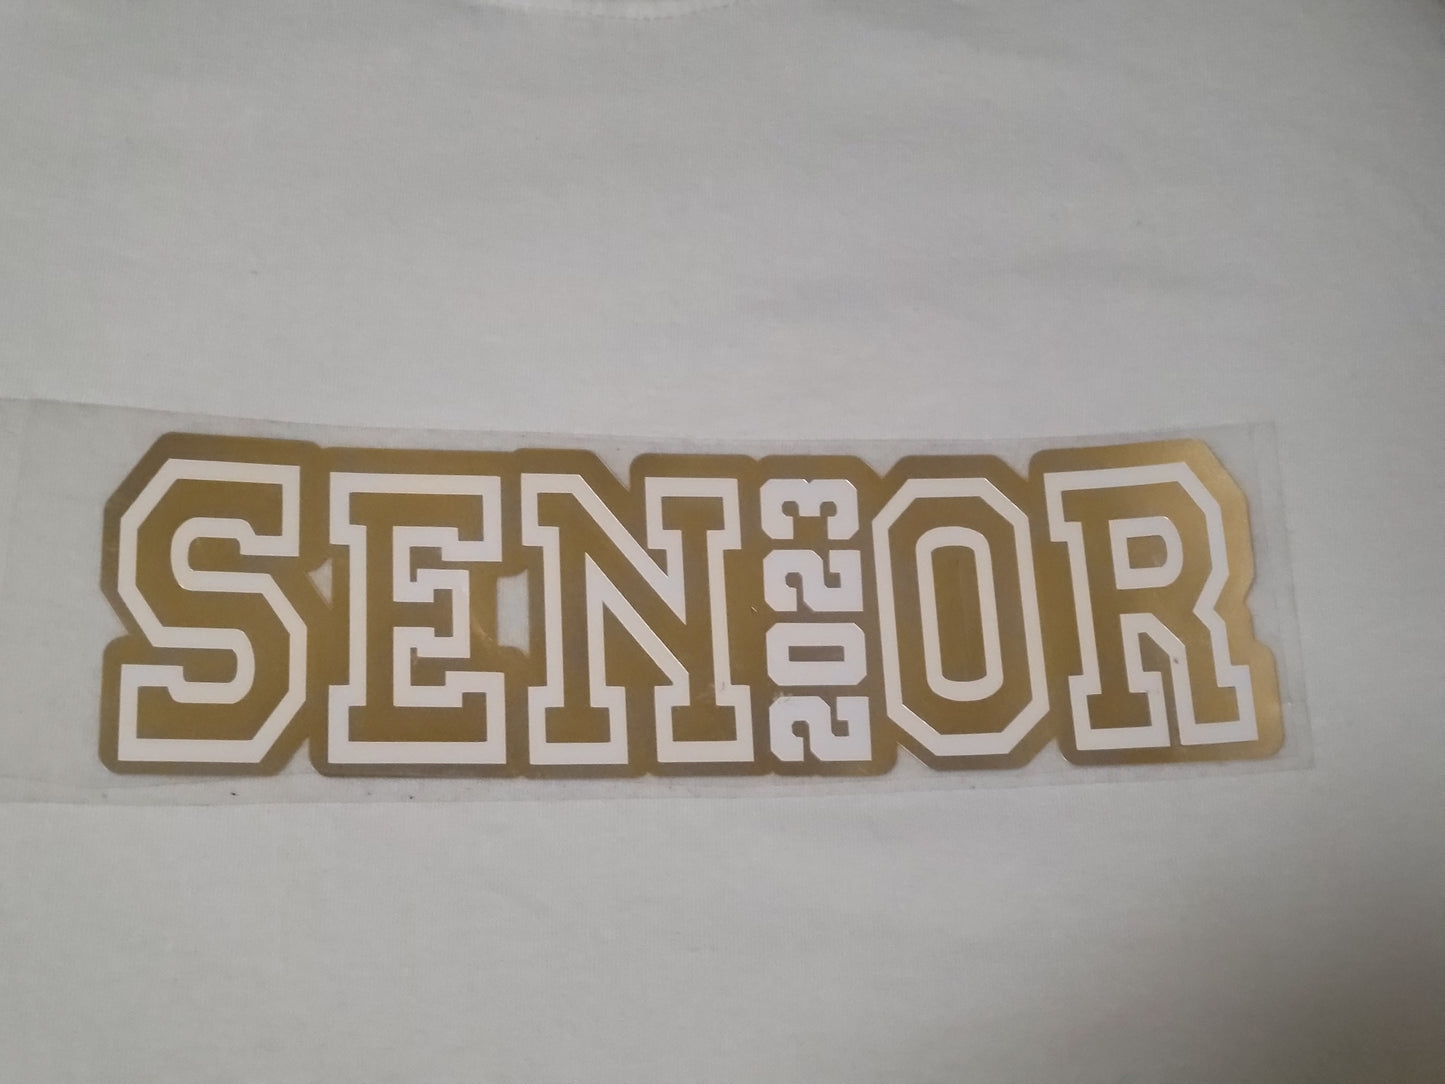 Senior t-shirt